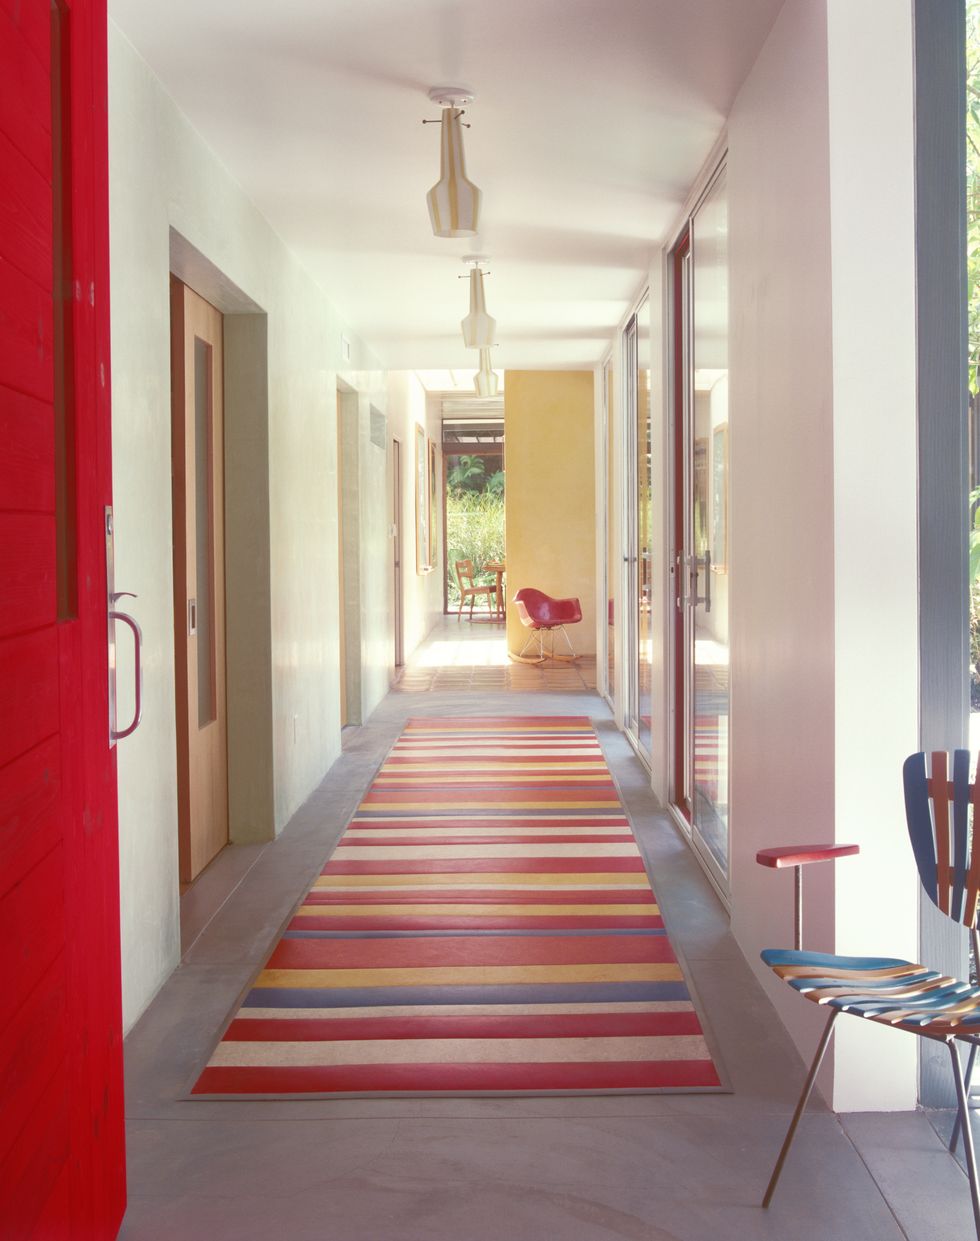 Colocar una alfombra en el pasillo: ¿es una buena idea? Analizamos pros y  contras